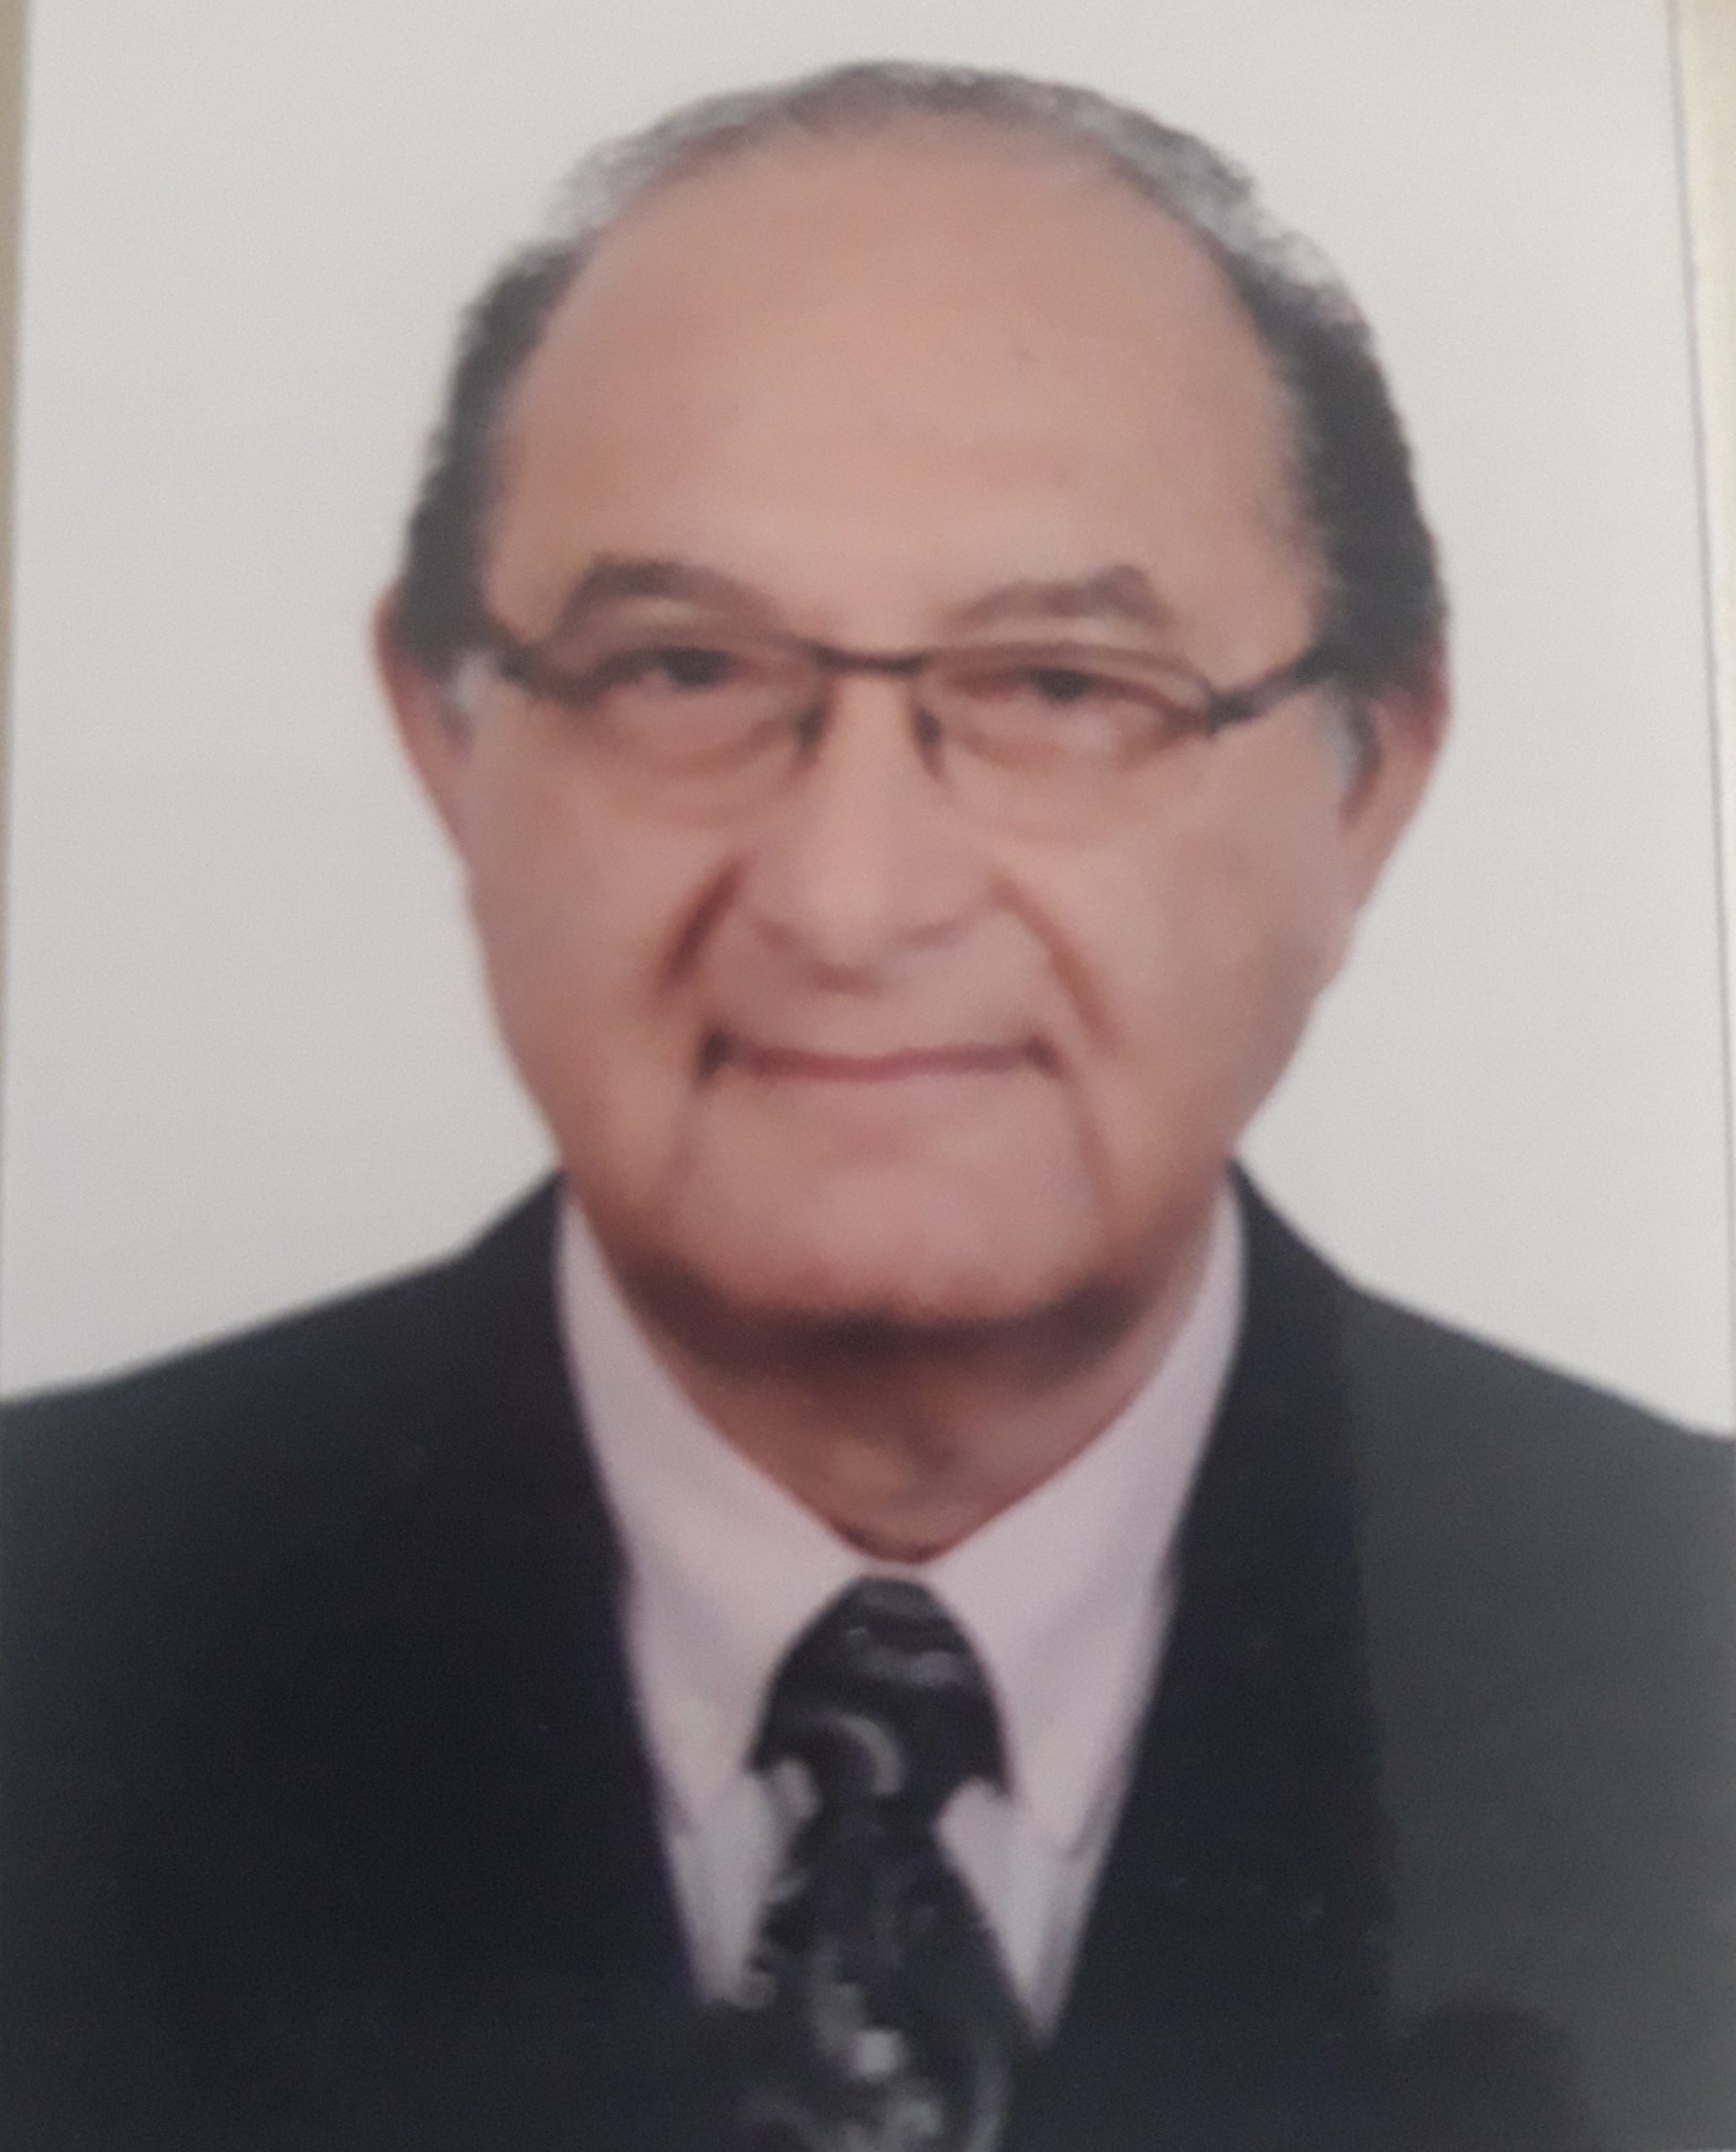 Mohamed Abdel Razek